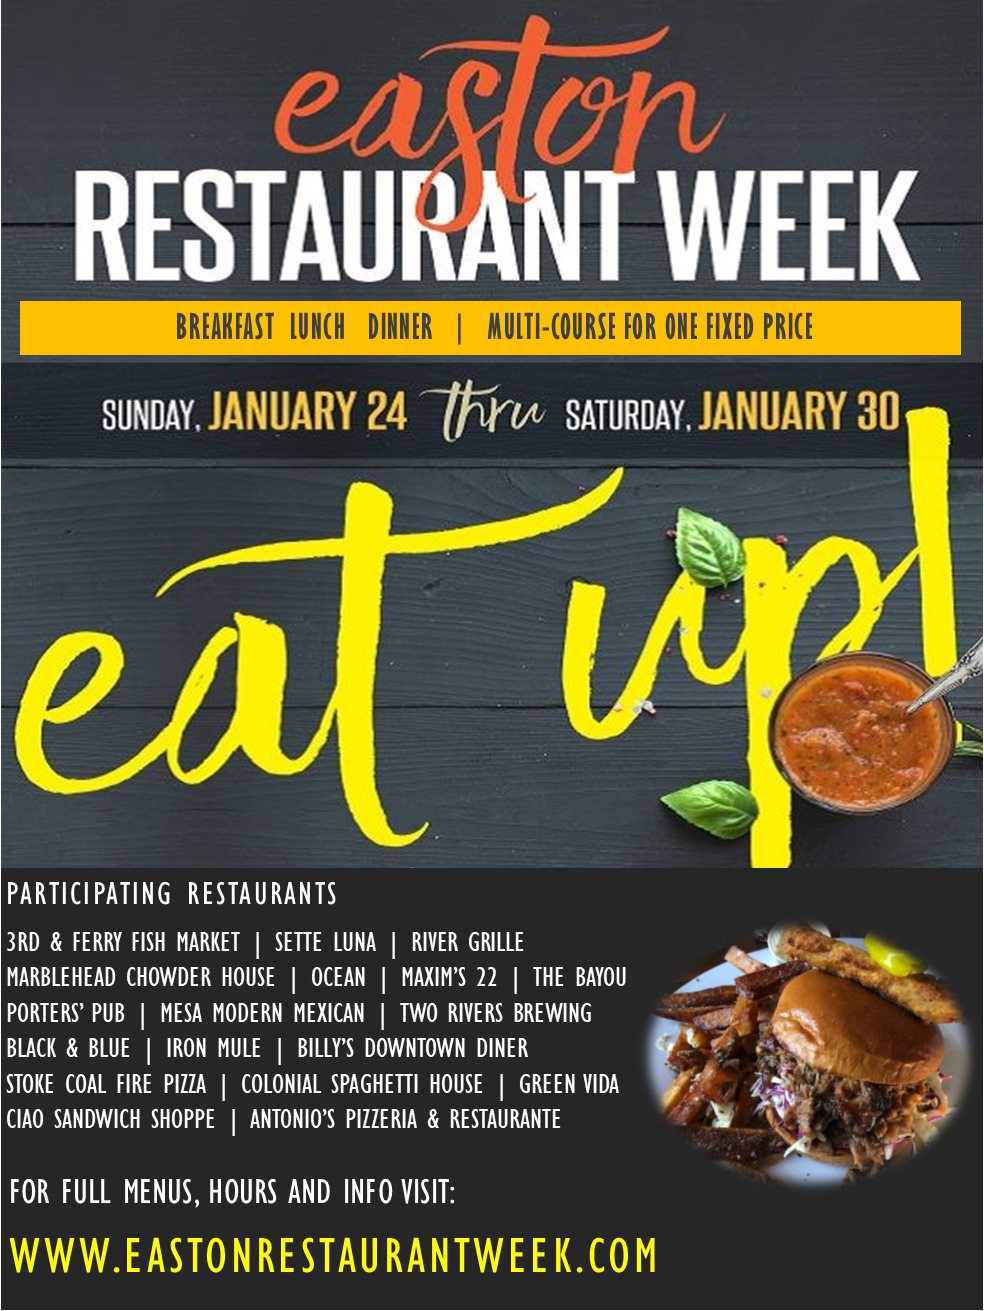 Mark Your Calendars for Easton Restaurant Week!